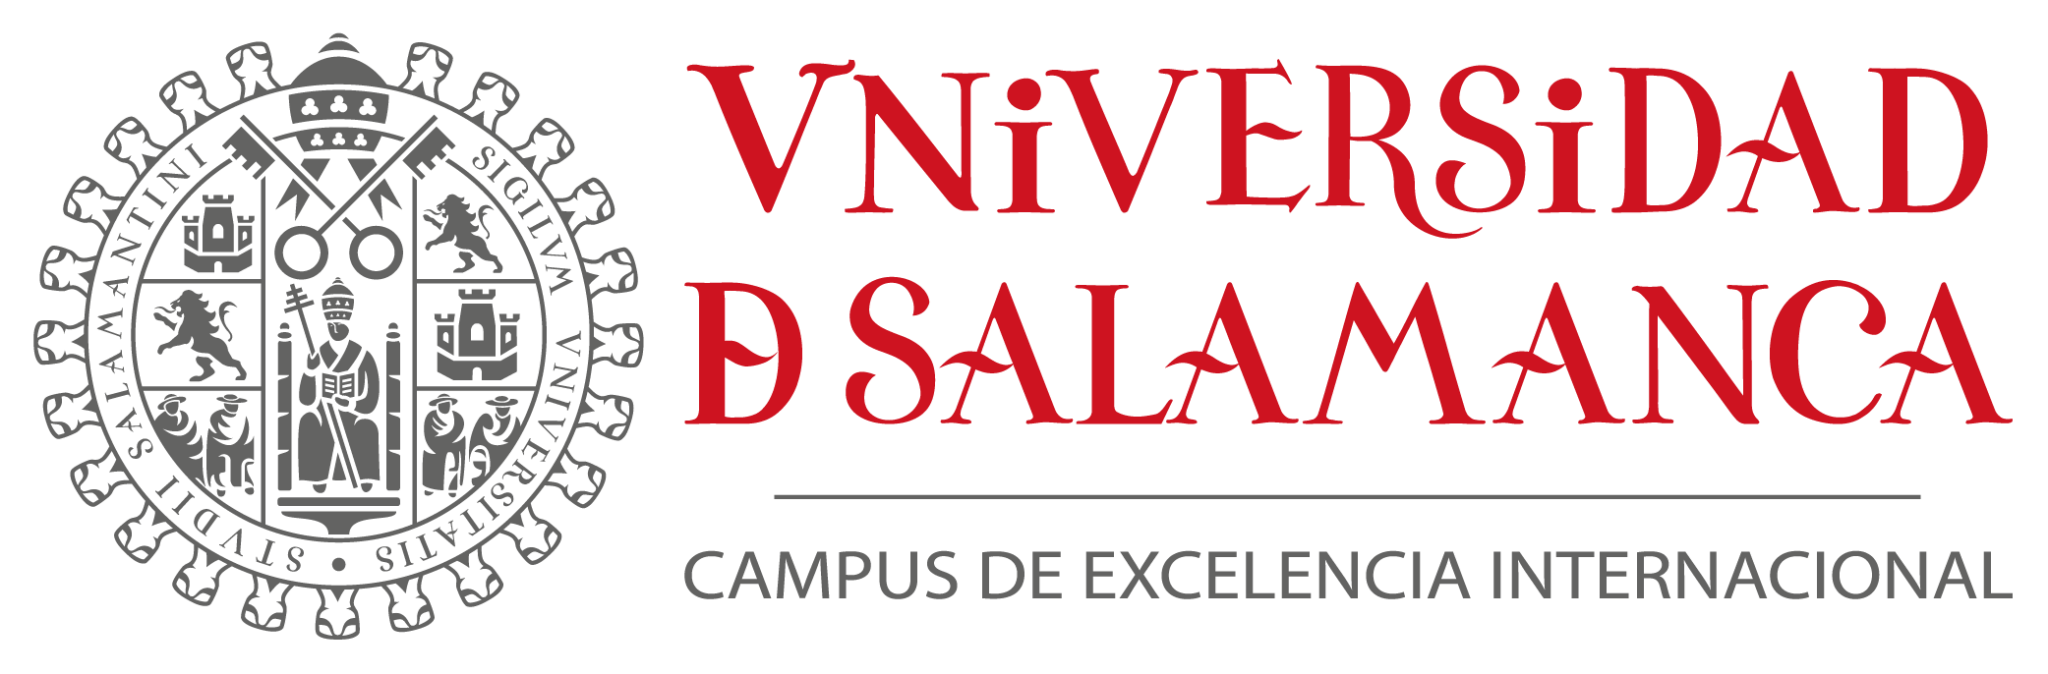 Universidad de salamanca (USAL)